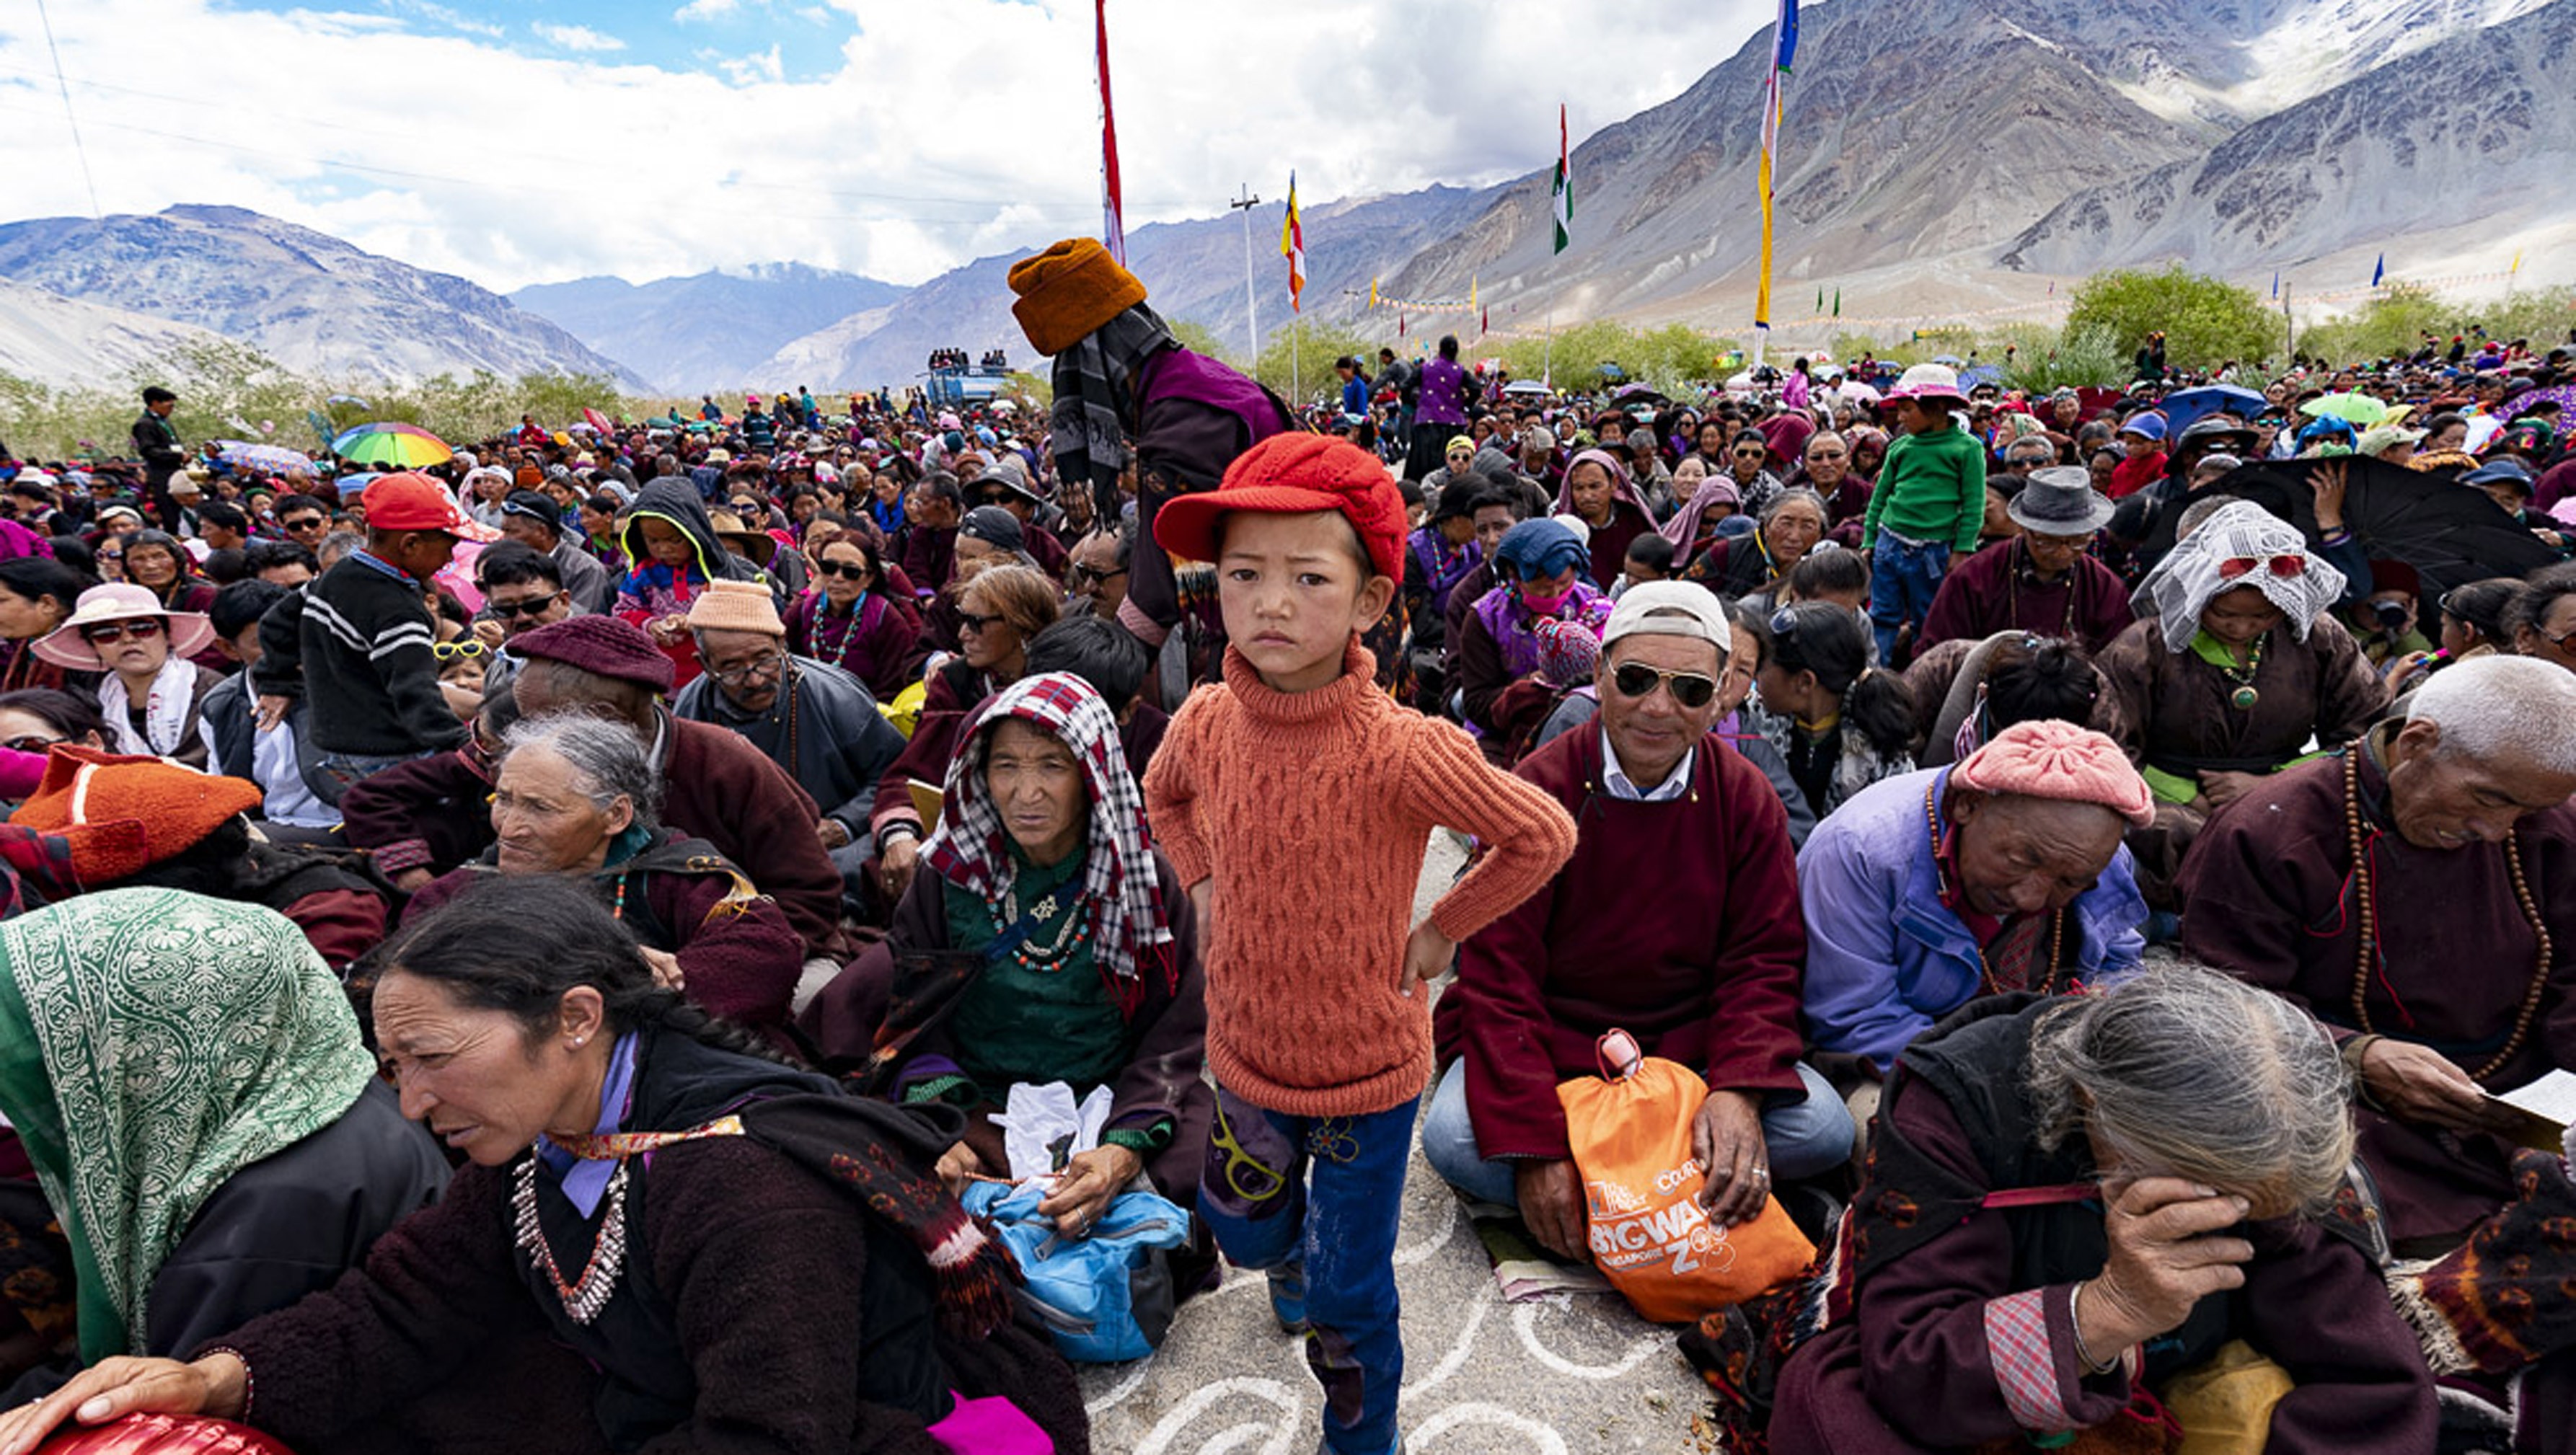 Una vista de algunas de las más de 16.000 personas que asistieron a la enseñanza de Su Santidad el Dalai Lama en Padum, Zanskar, J&K, India el 22 de julio de 2018. Foto de Tenzin Choejor